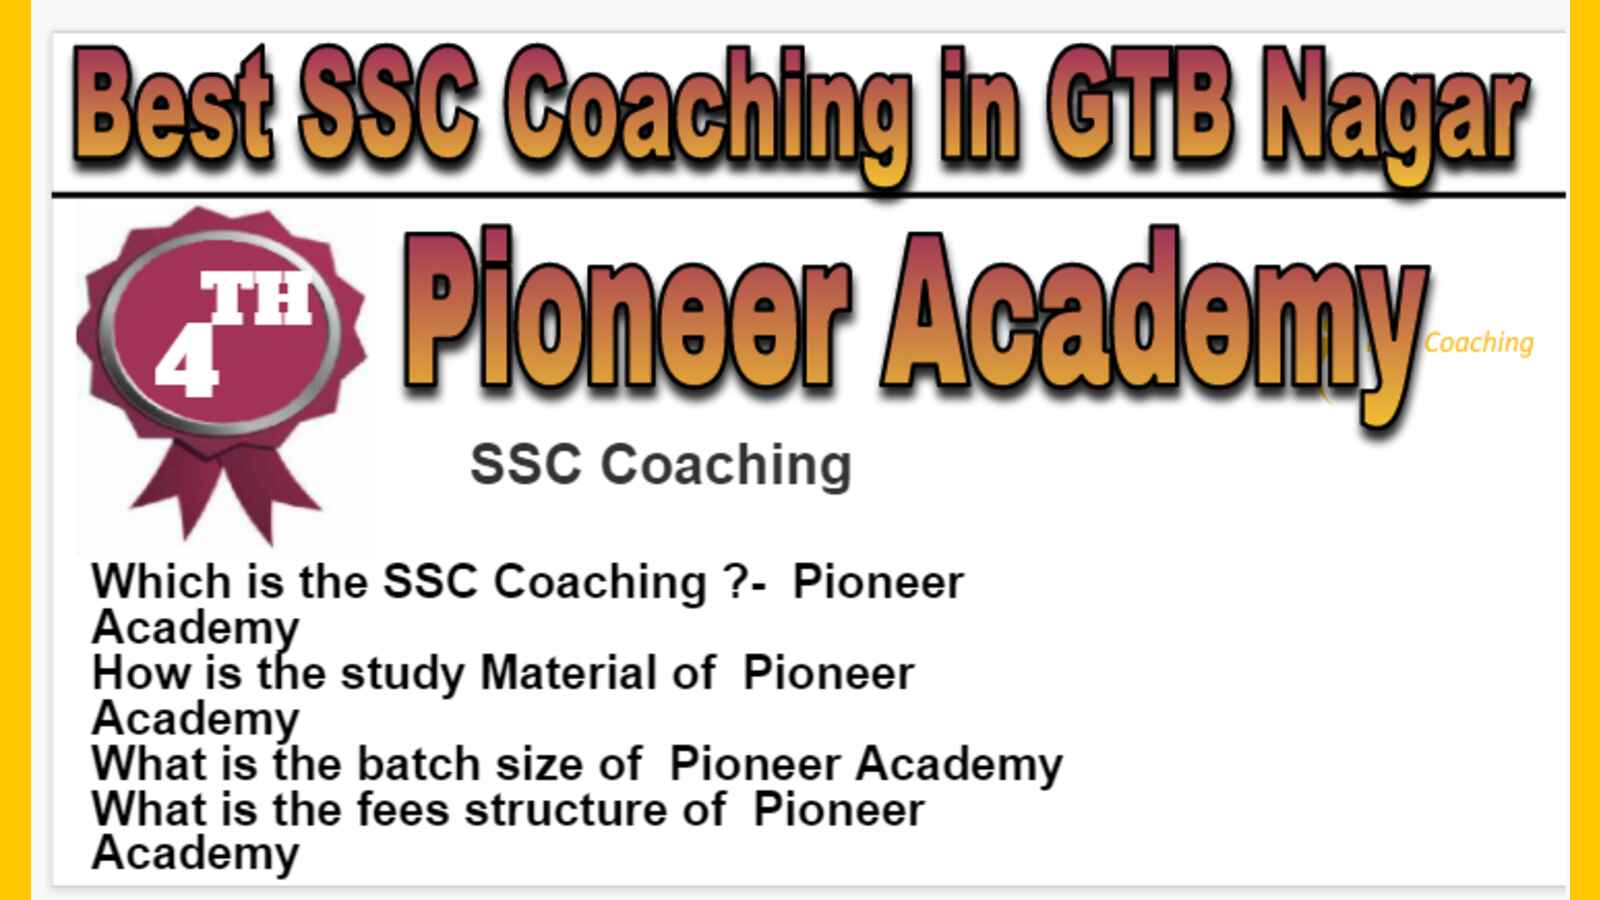 Rank 4 Best SSC Coaching in GTB Nagar